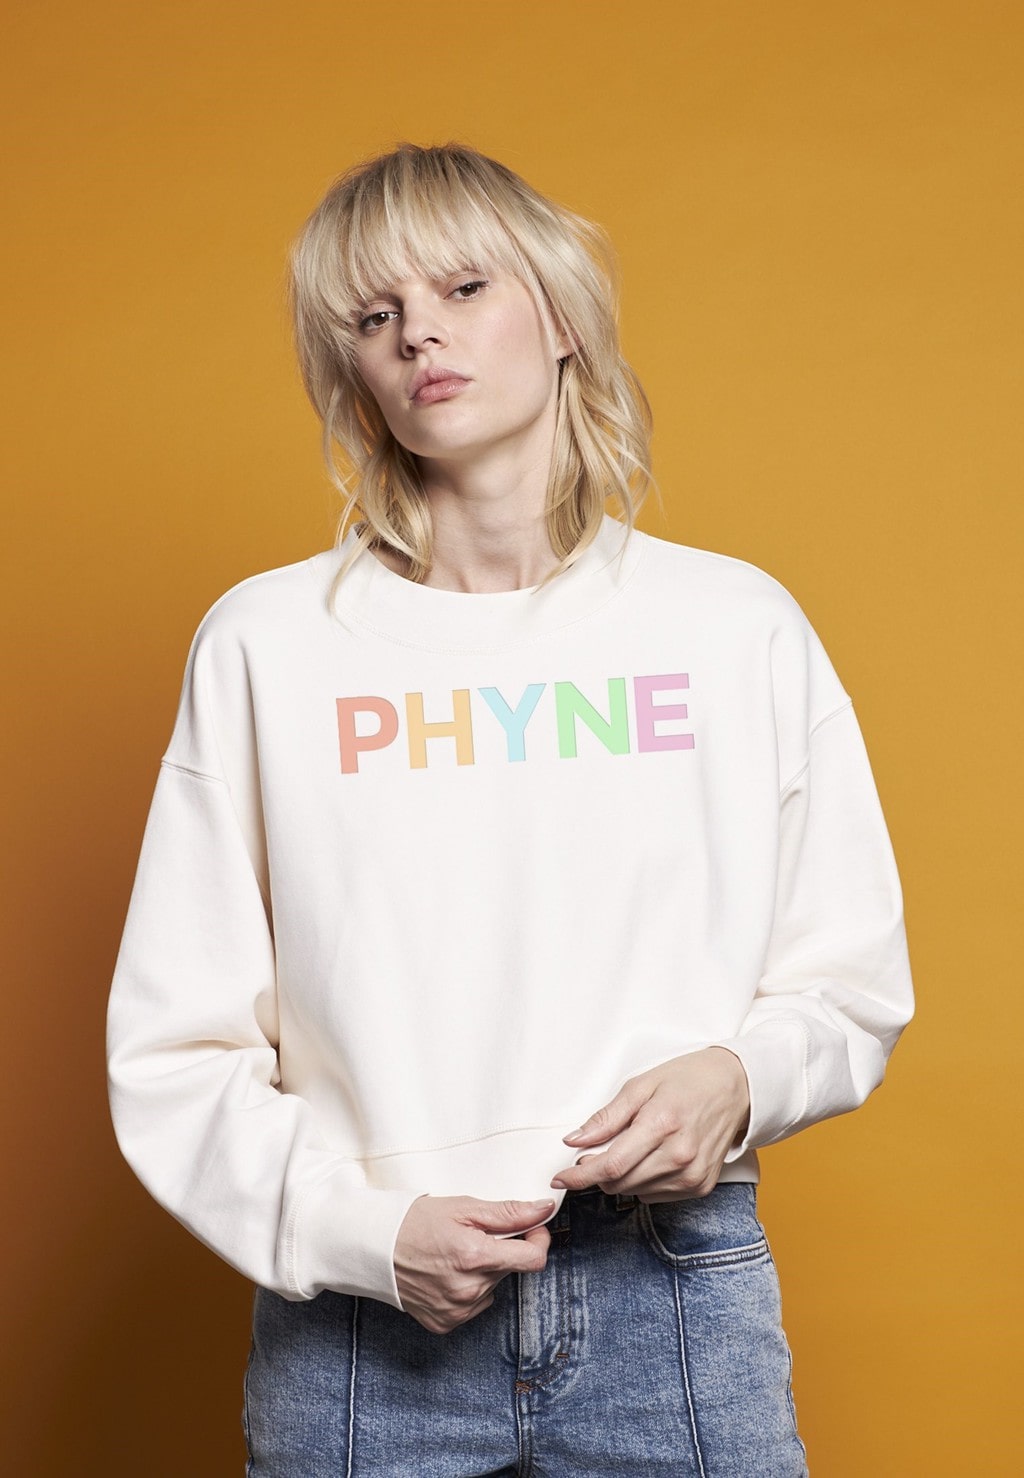 Een jonge vrouw met een sweater van het merk Phyne uit Duitsland